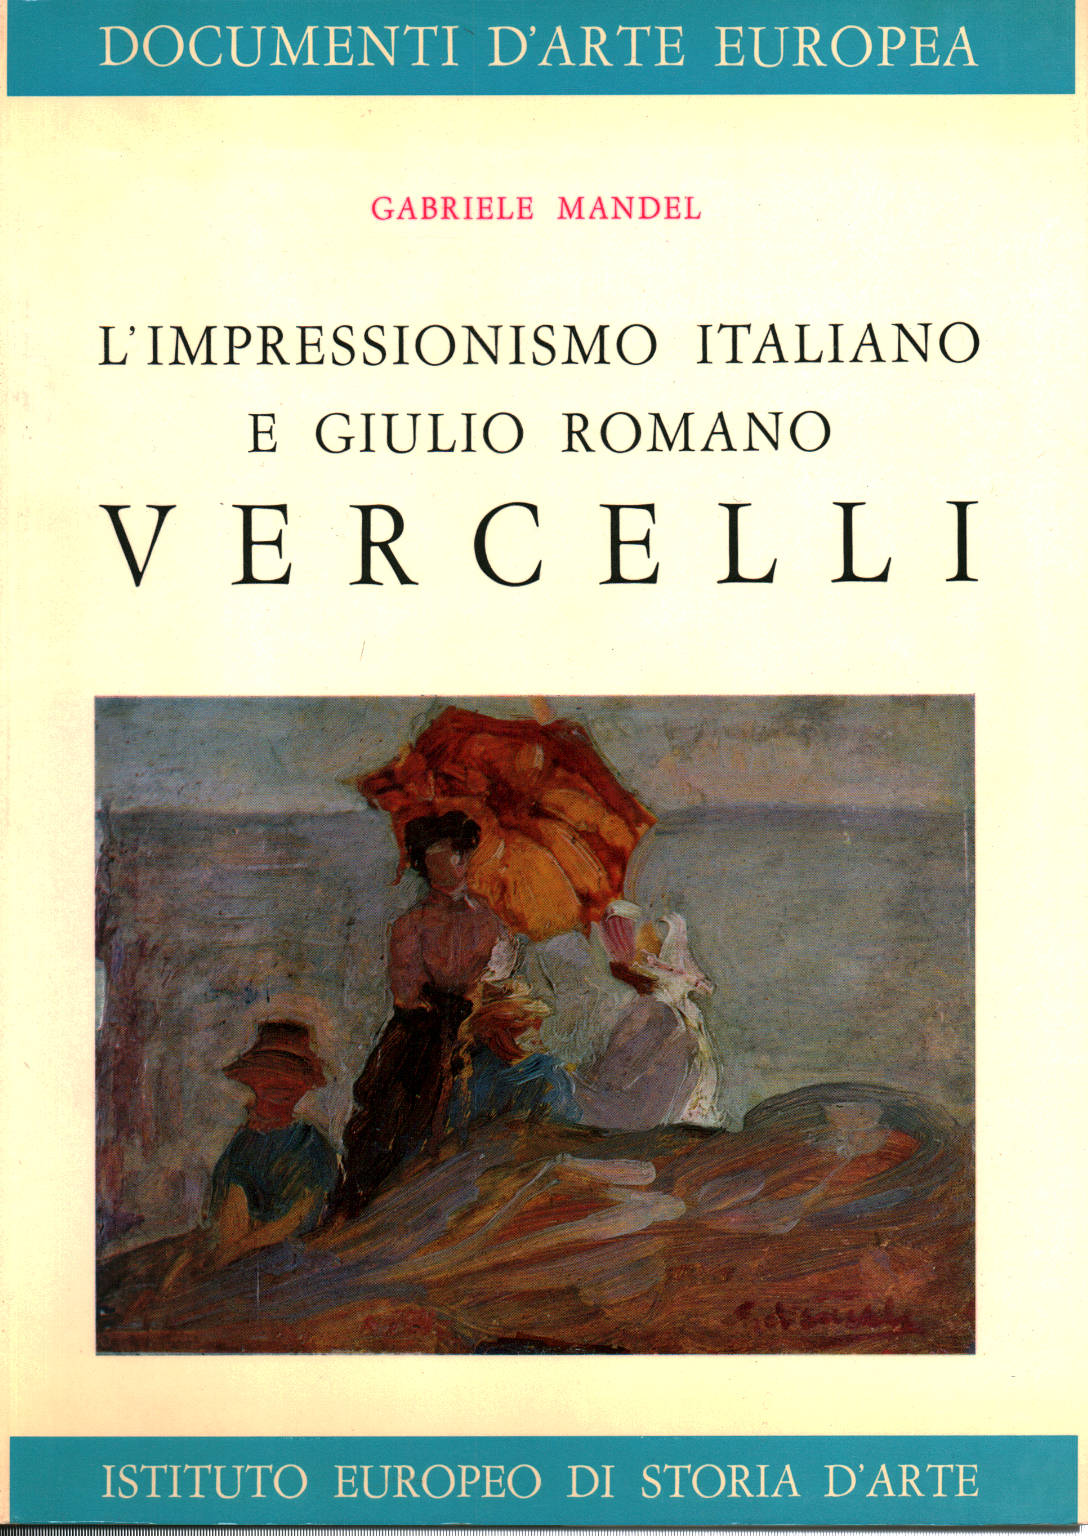 L'impressionismo italiano e Giulio Romano Vercell, Gabriele Mandel